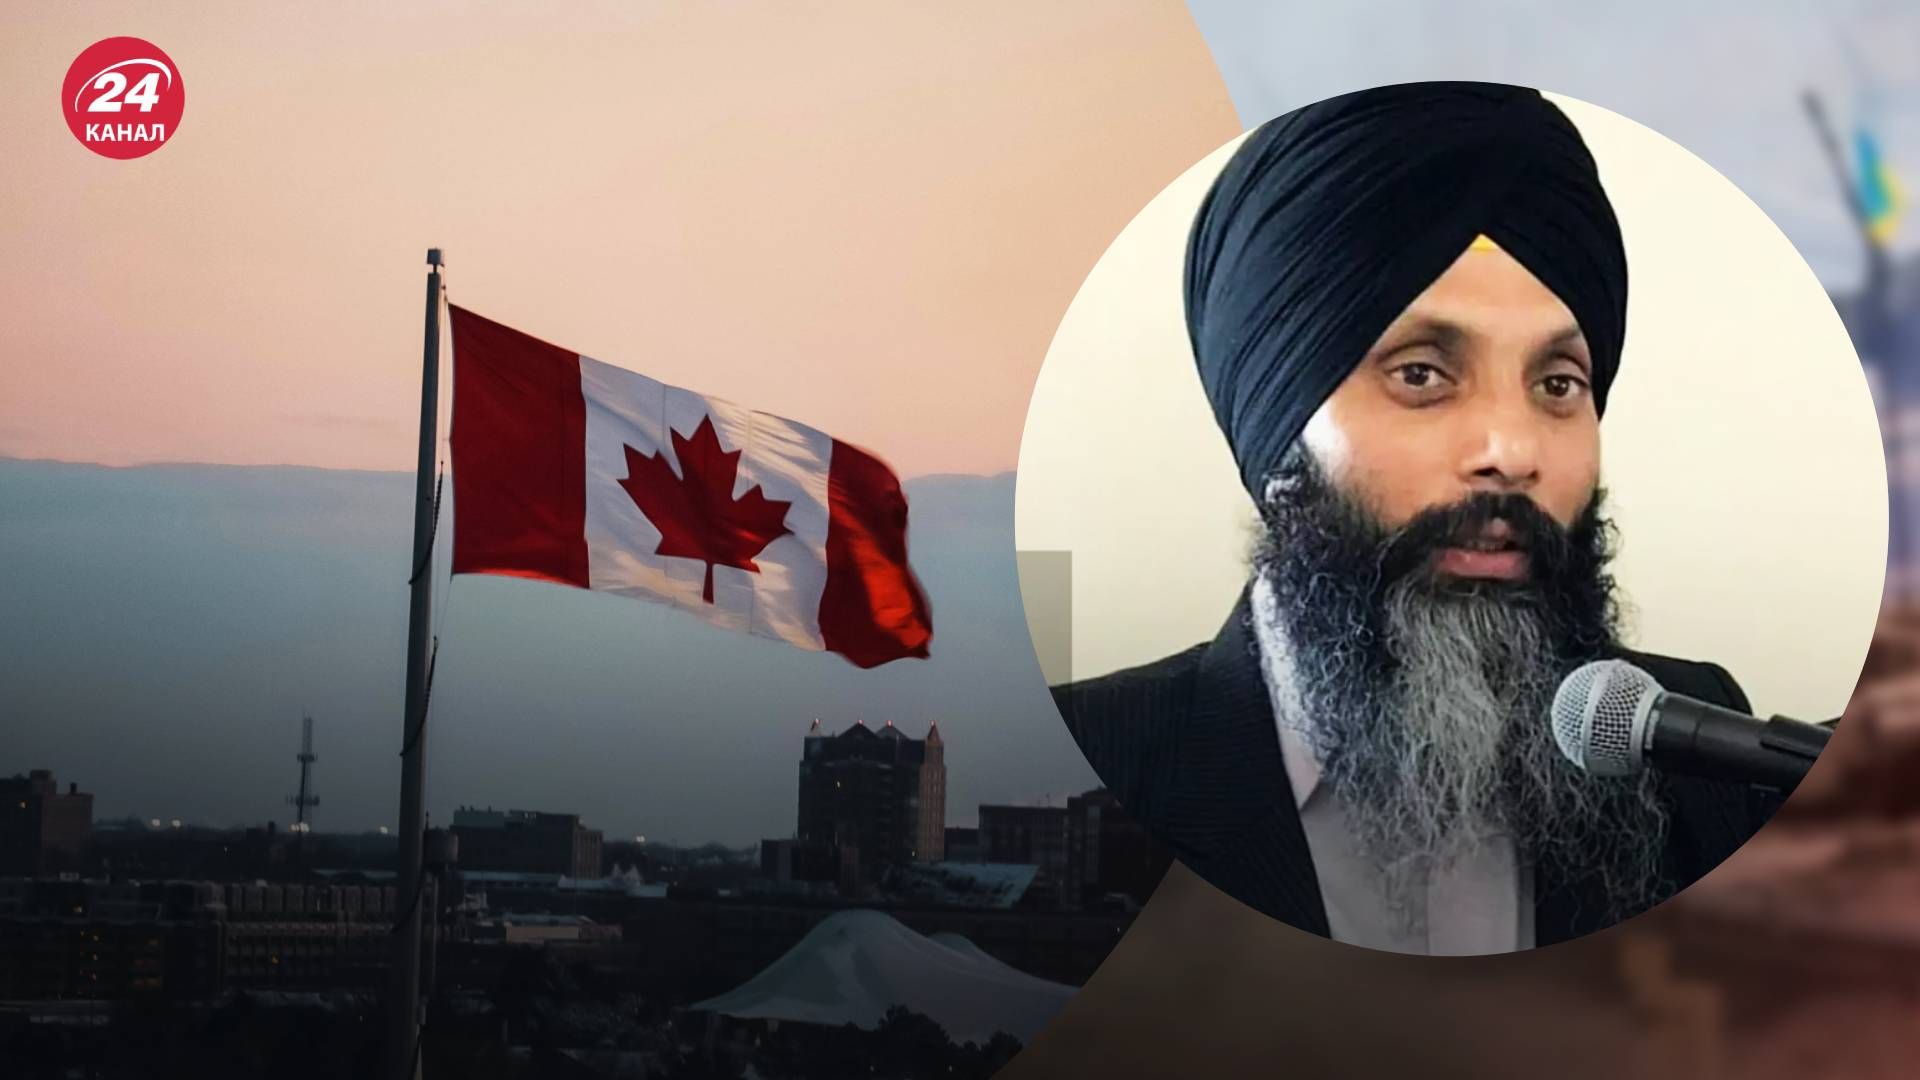 Індія та Канада конфліктують через сикхського лідера